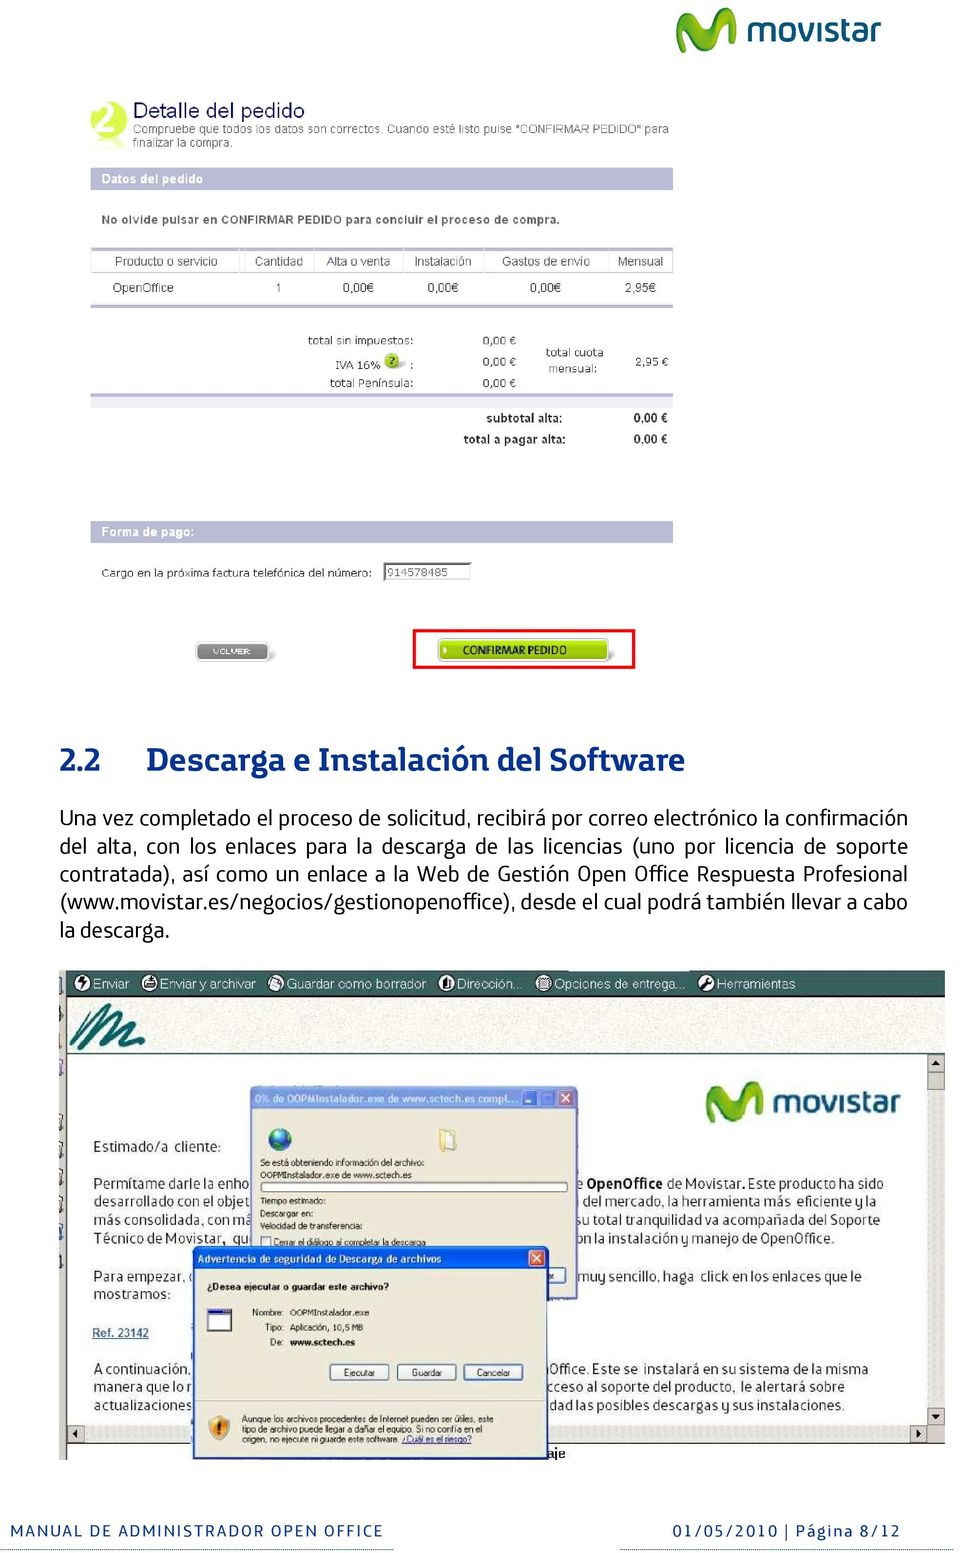 enlace a la Web de Gestión Open Office Respuesta Profesional (www.movistar.